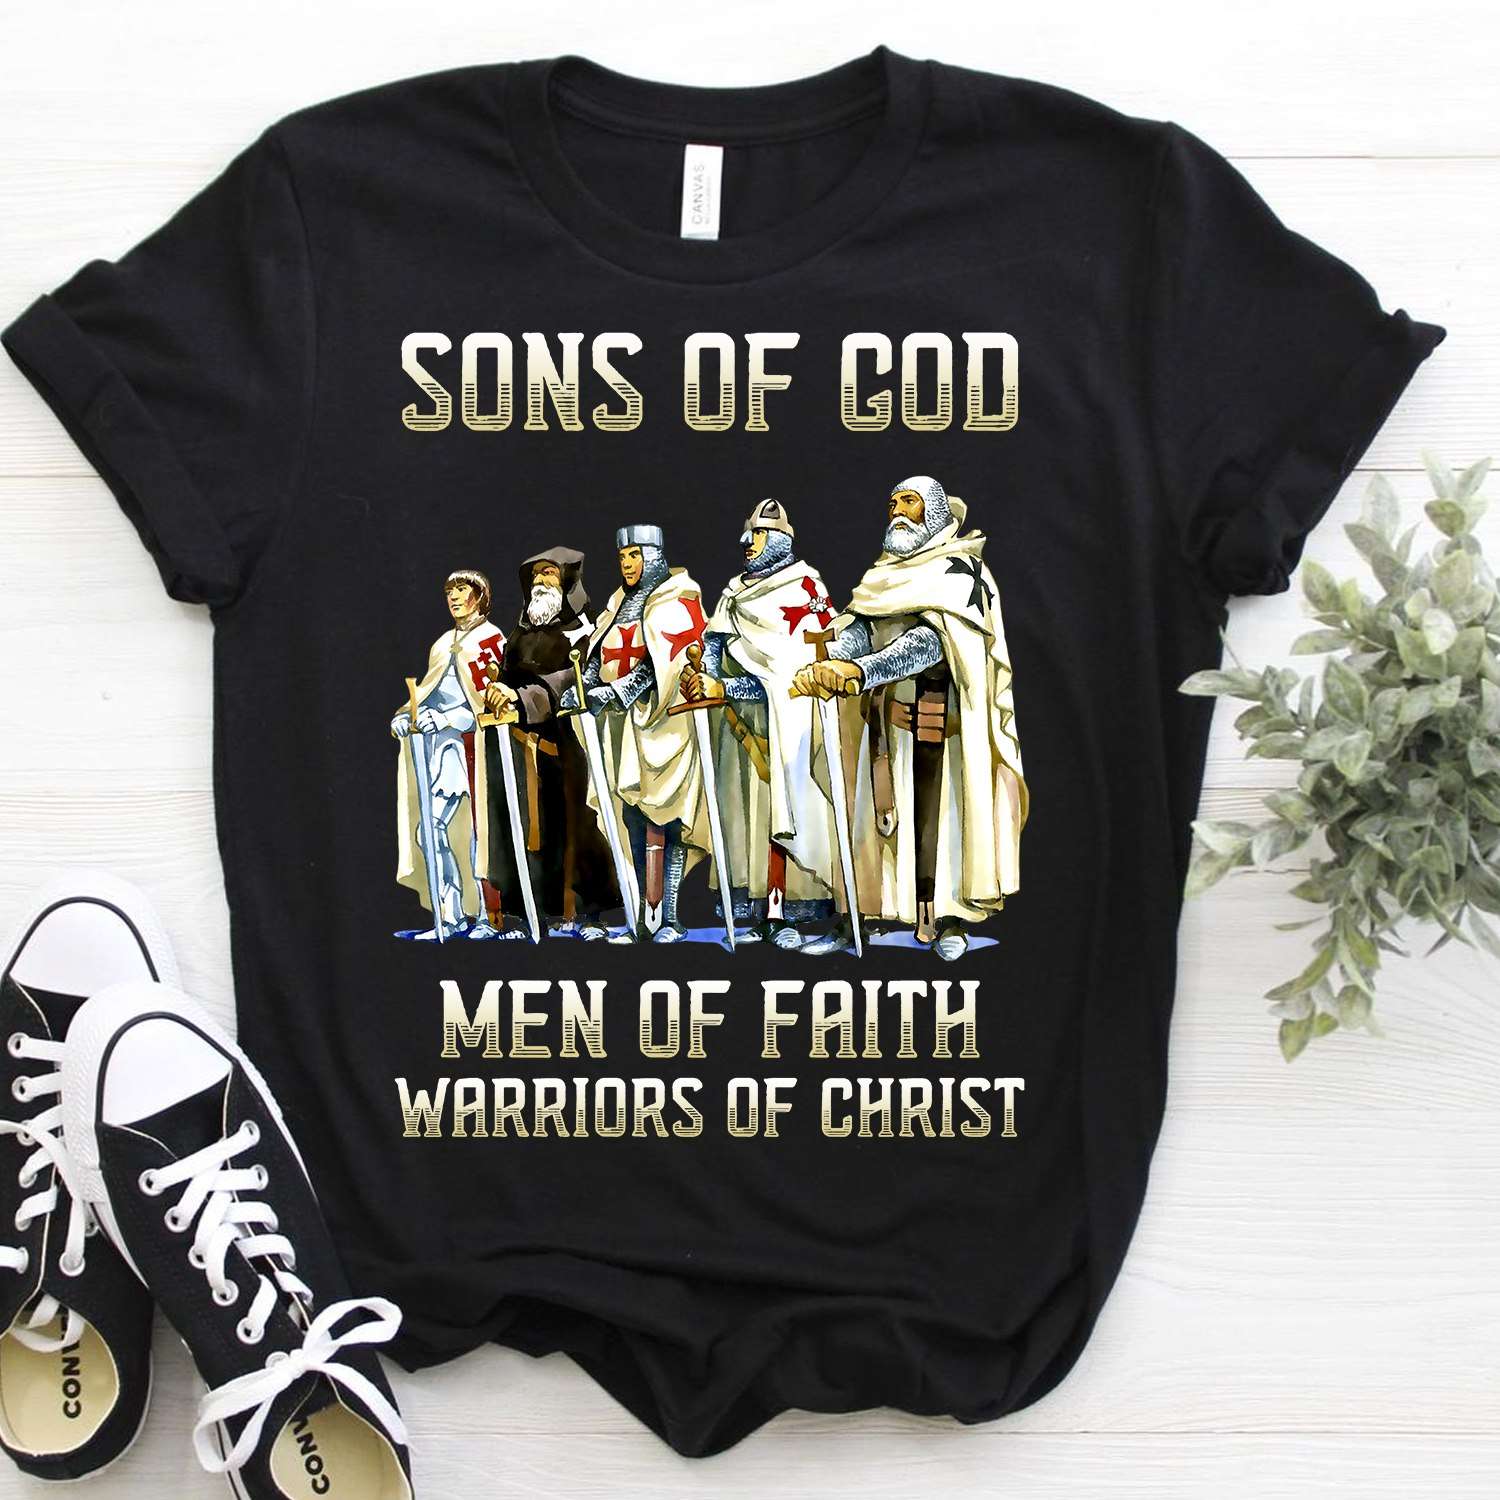 Son Of God - Men of faith warriors of christ